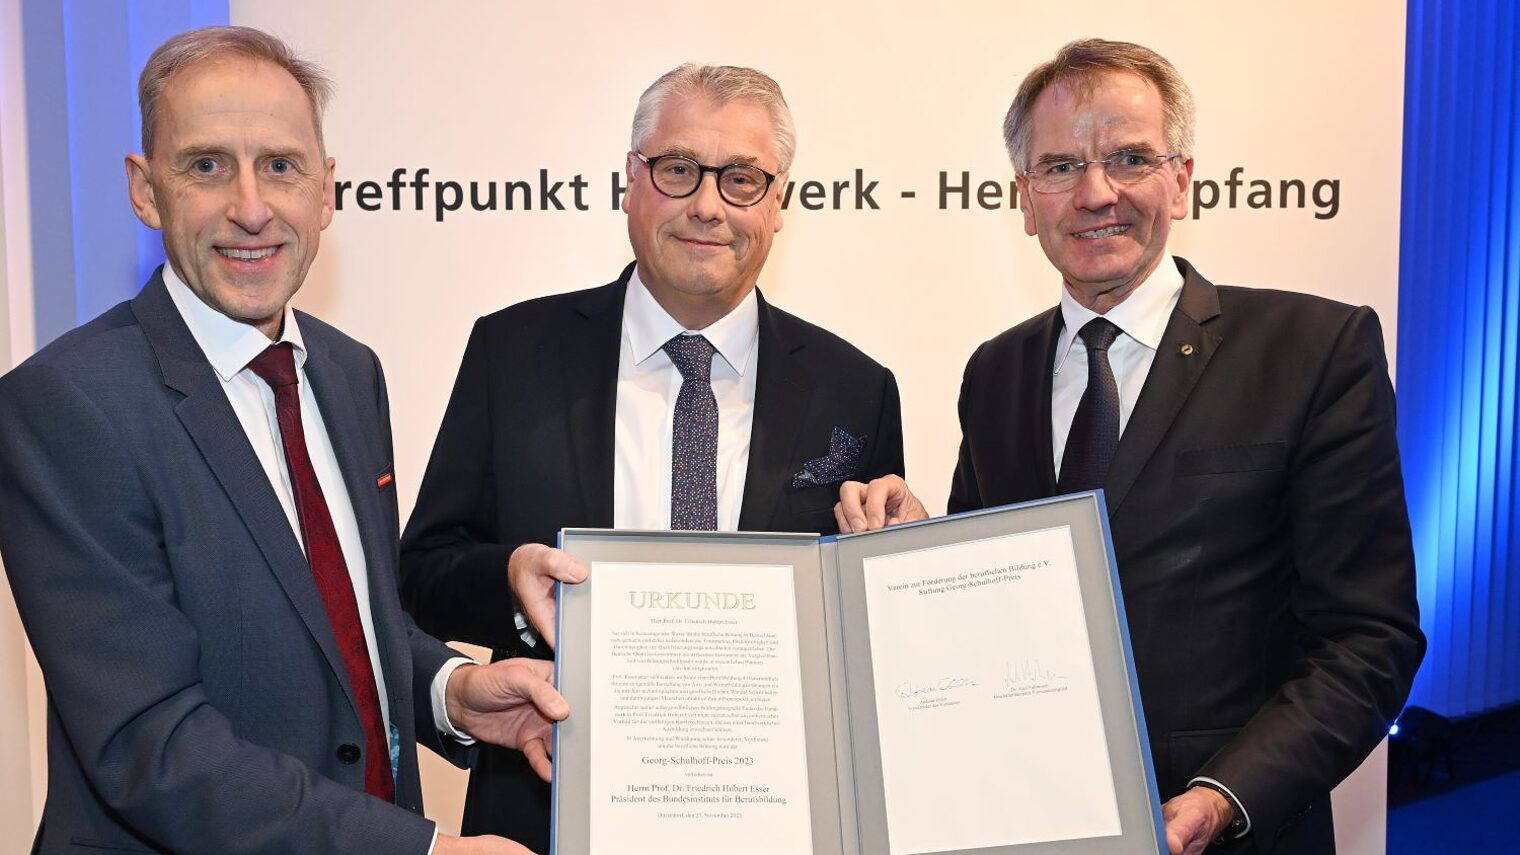 Der Preisträger Prof. Esser zeigt seine Urkunde. Mit dabei auf dem Foto sind Kammerpräsident Andreas Ehlert und Kammer-Hauptgeschäftsführer Axel Fuhrmann.